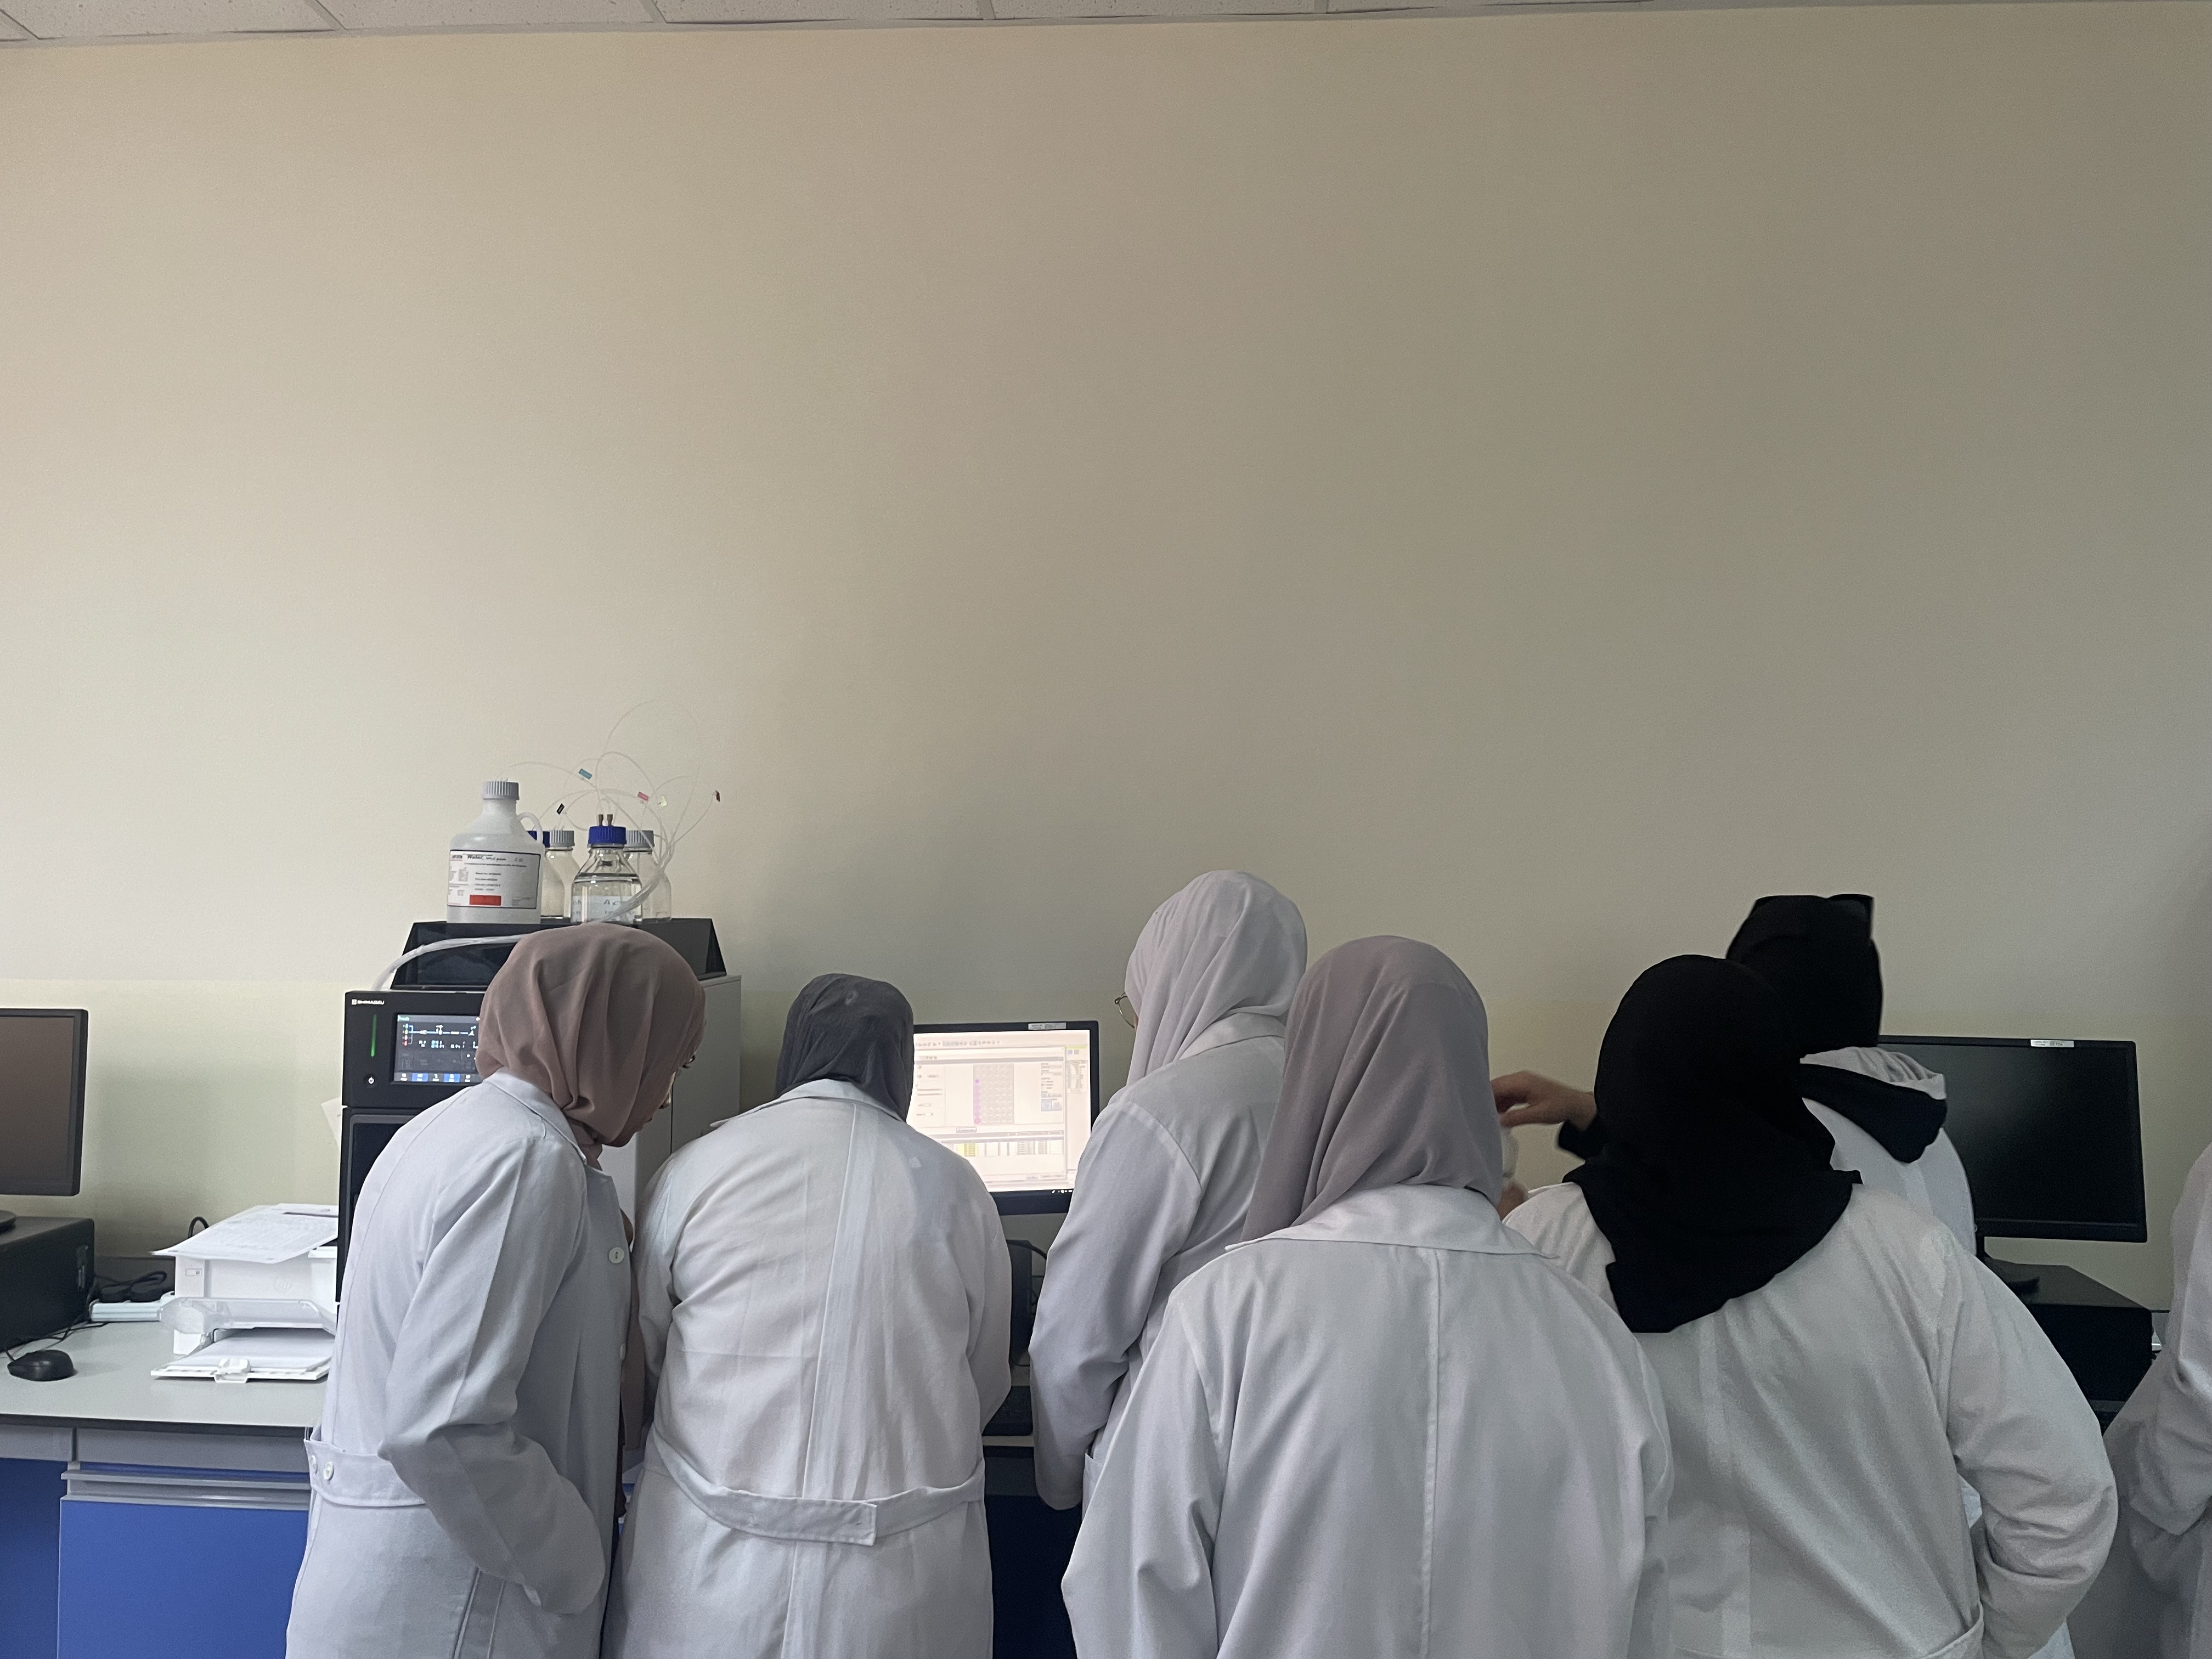 دورة متقدمة لطلبة صيدلة "عمان العربية" حول جهاز HPLC3